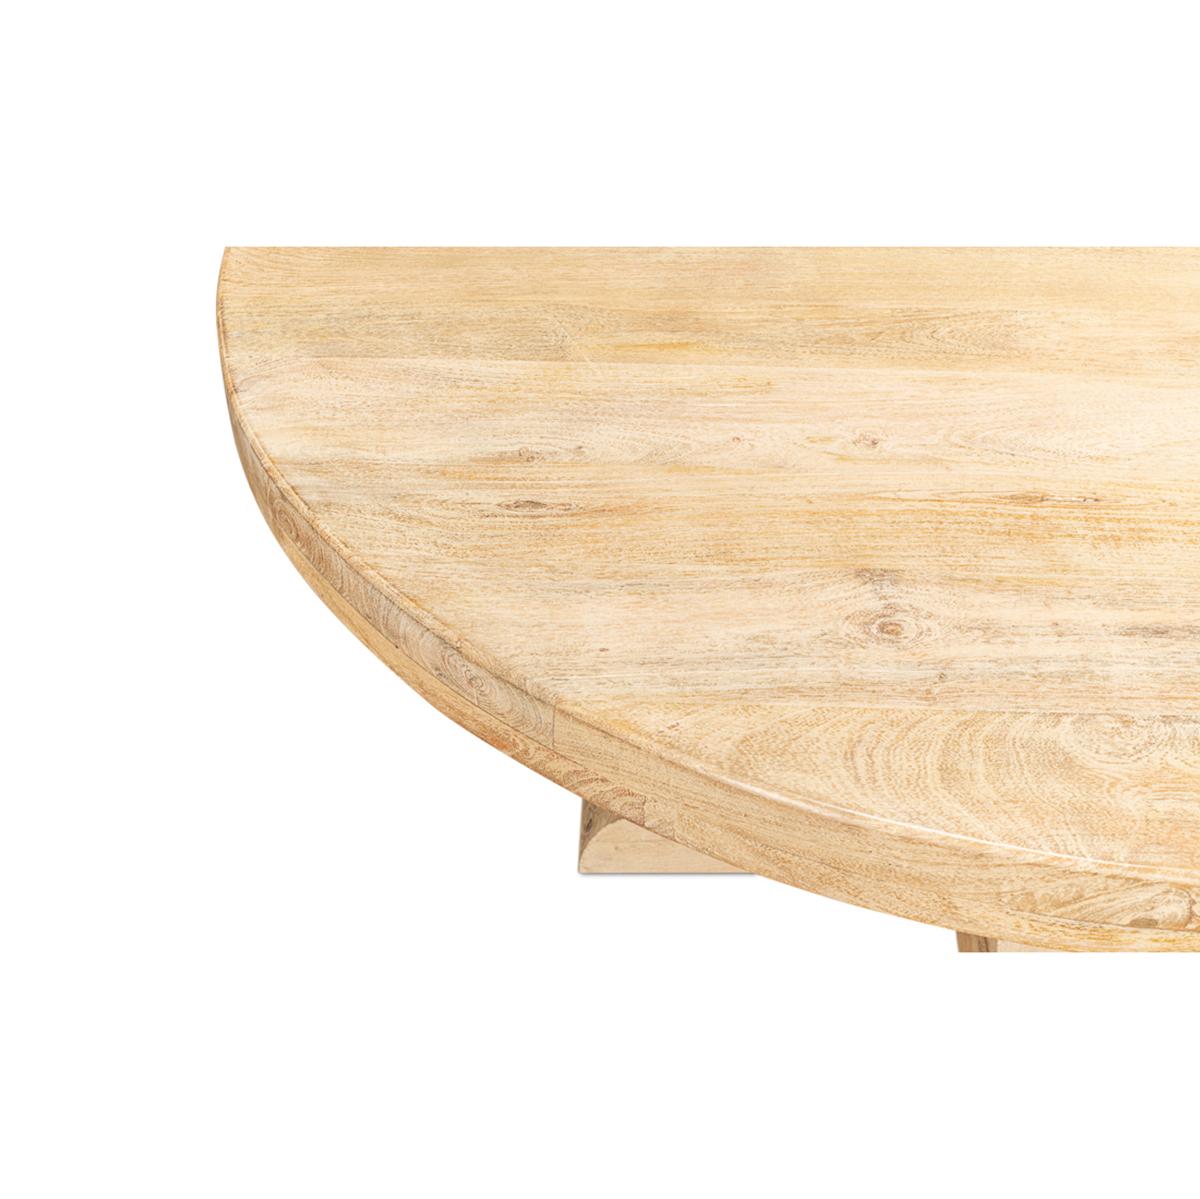 light wood table